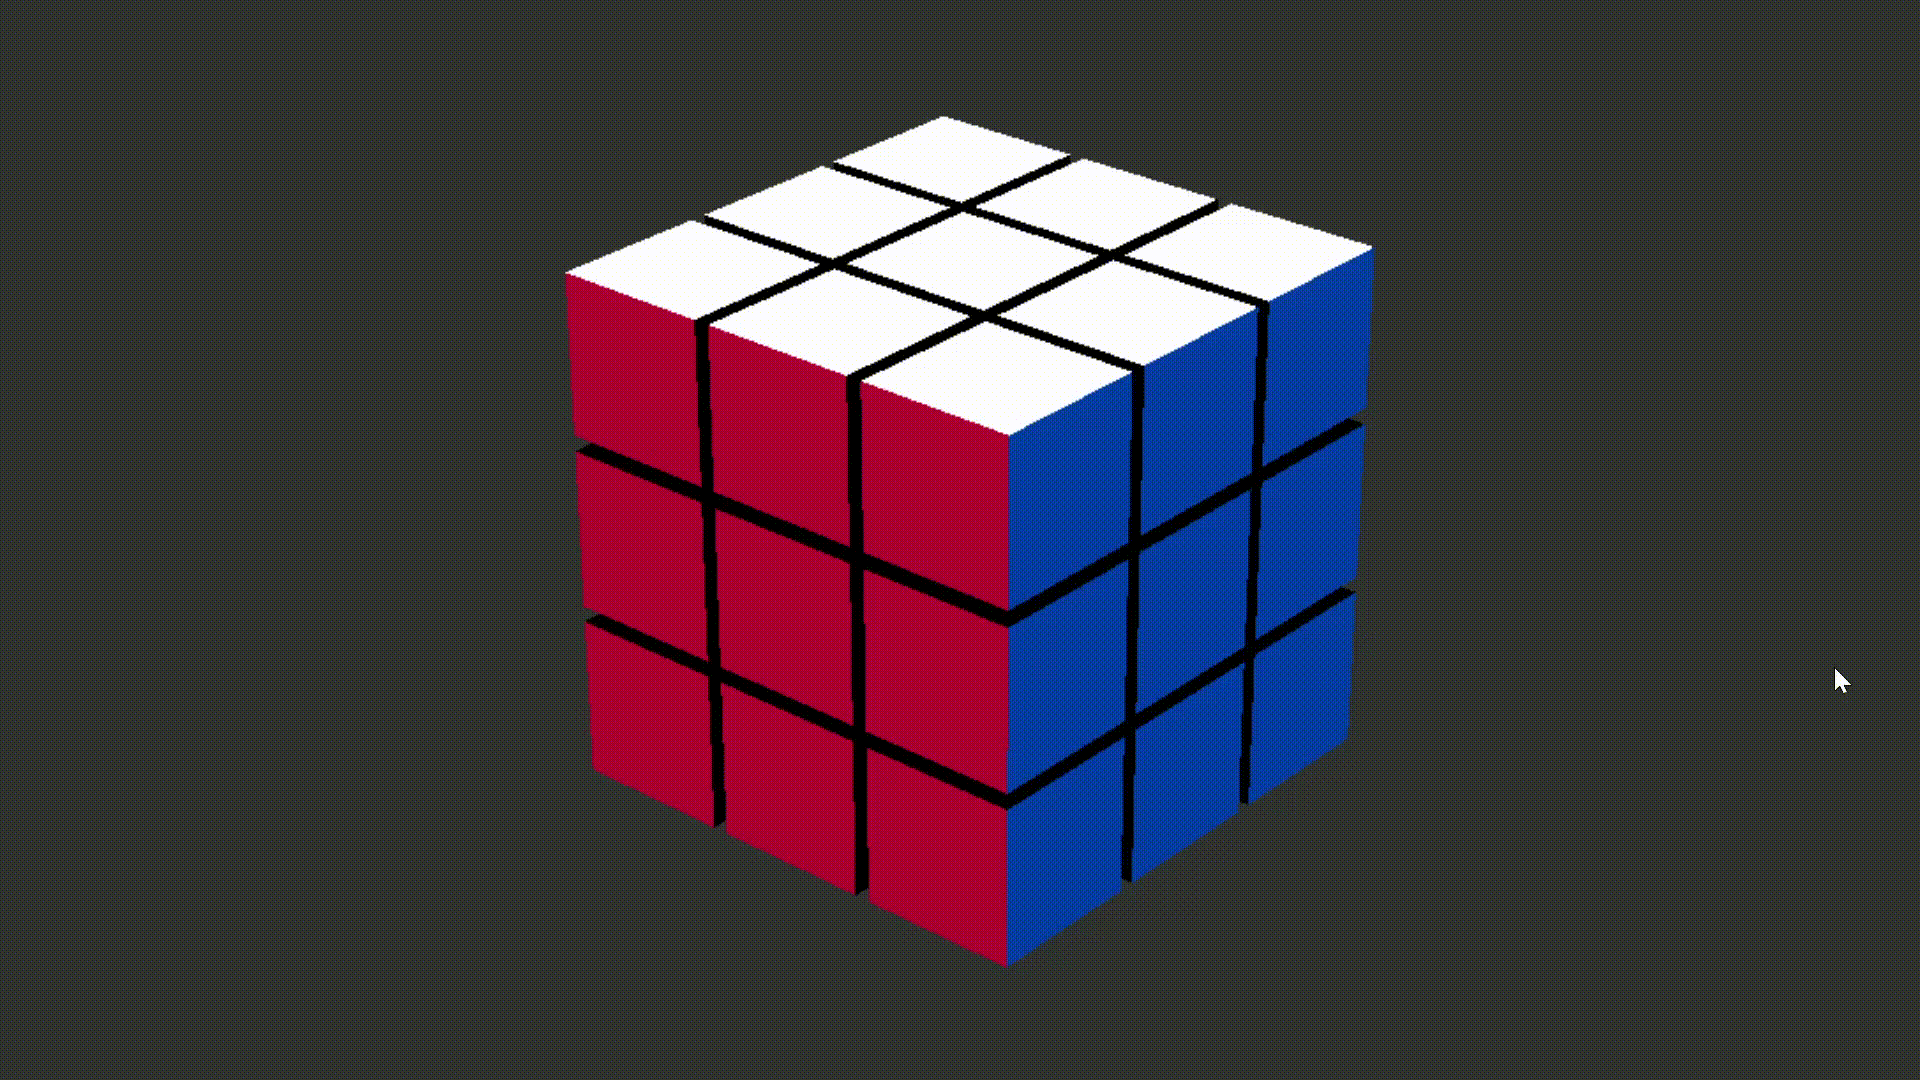 scrambling a Rubik's cube